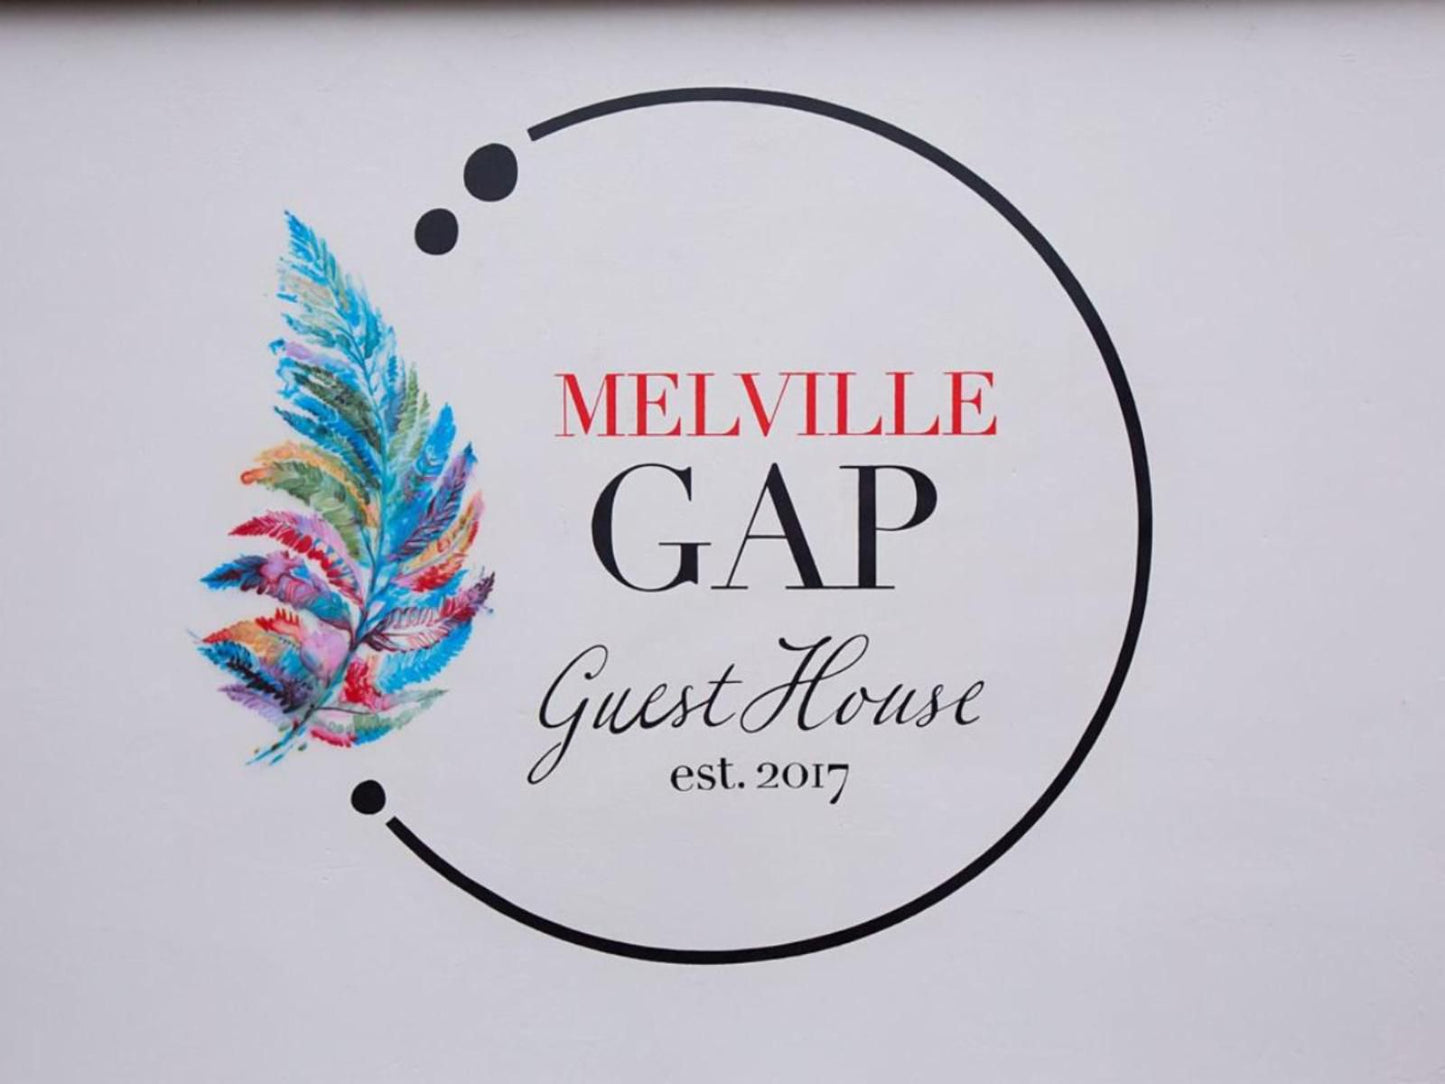 Melville Gap Guest House Melville Johannesburg Gauteng South Africa Unsaturated